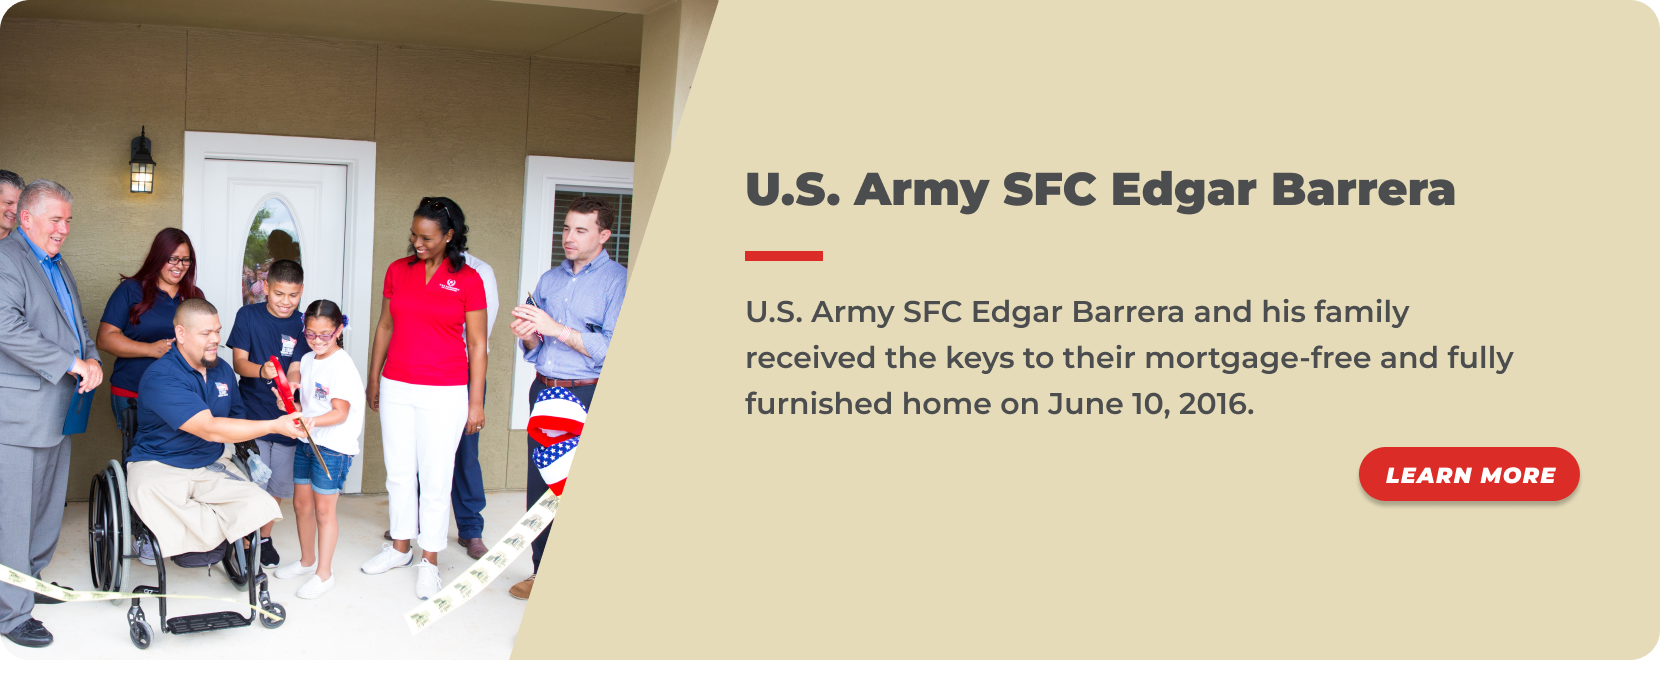 11 -U.S. Army SFC Edgar Barrera